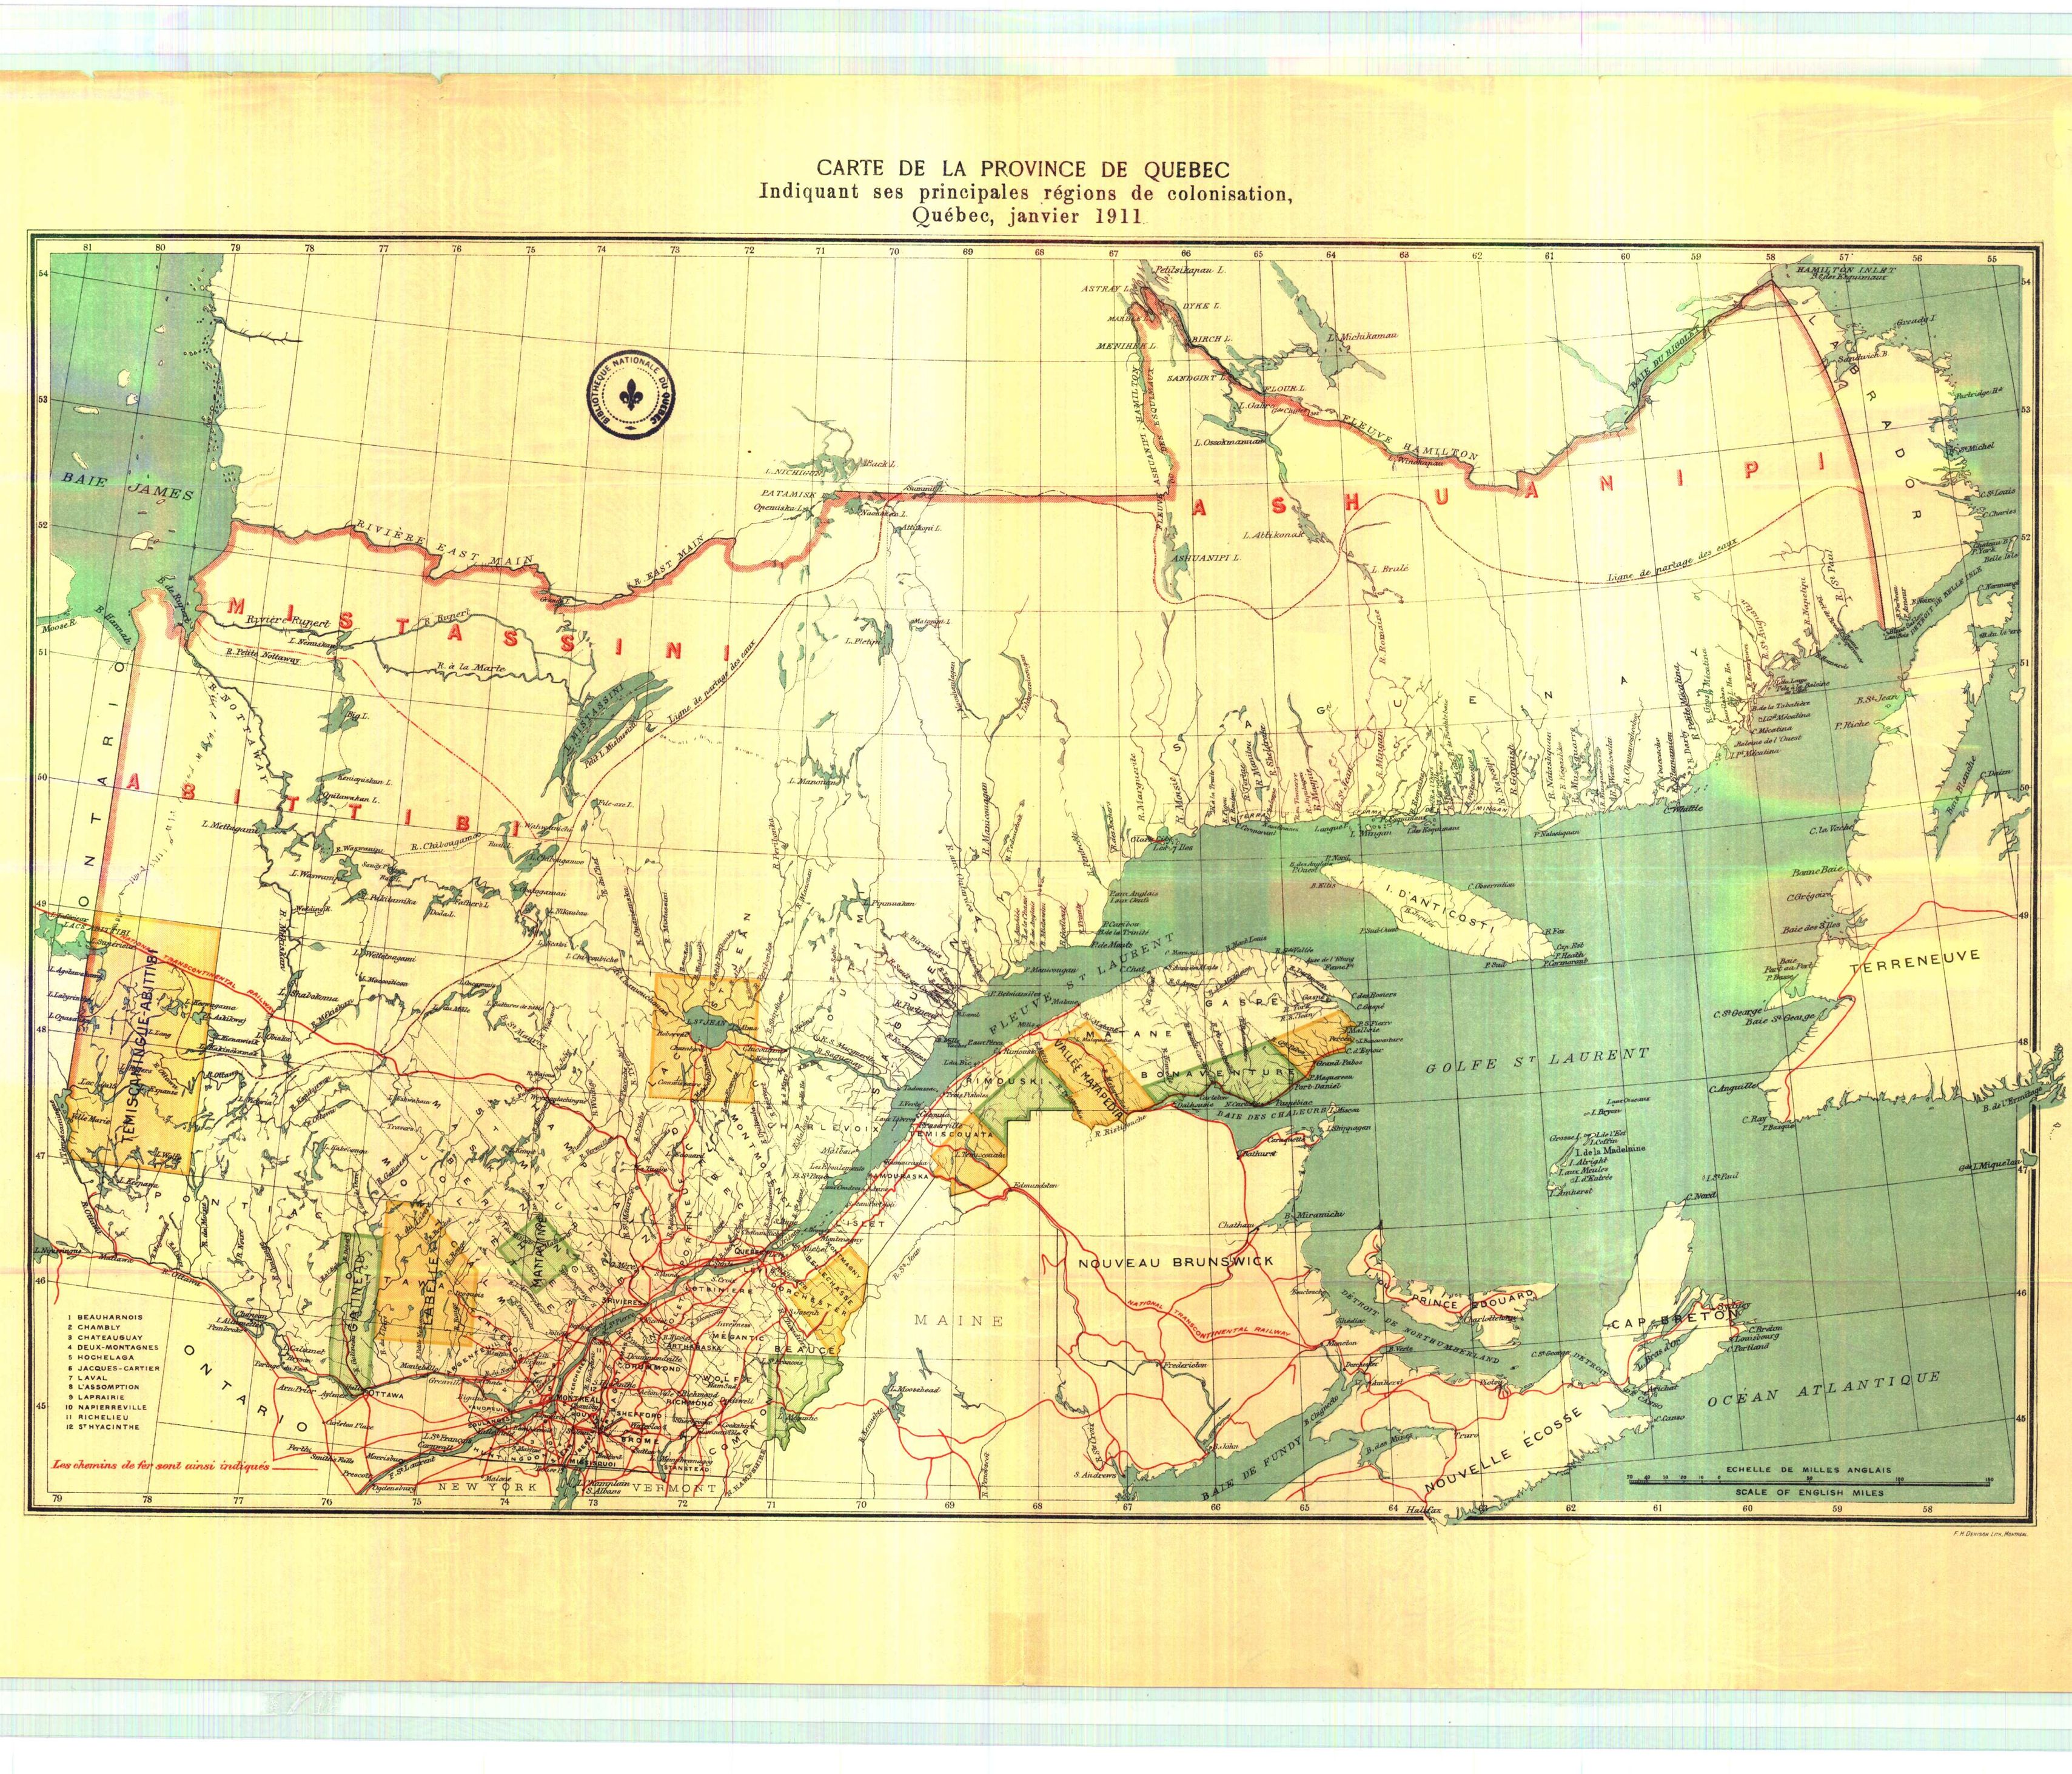 Carte géographique détaillée de la province de Québec indiquant ses principales régions de colonisation